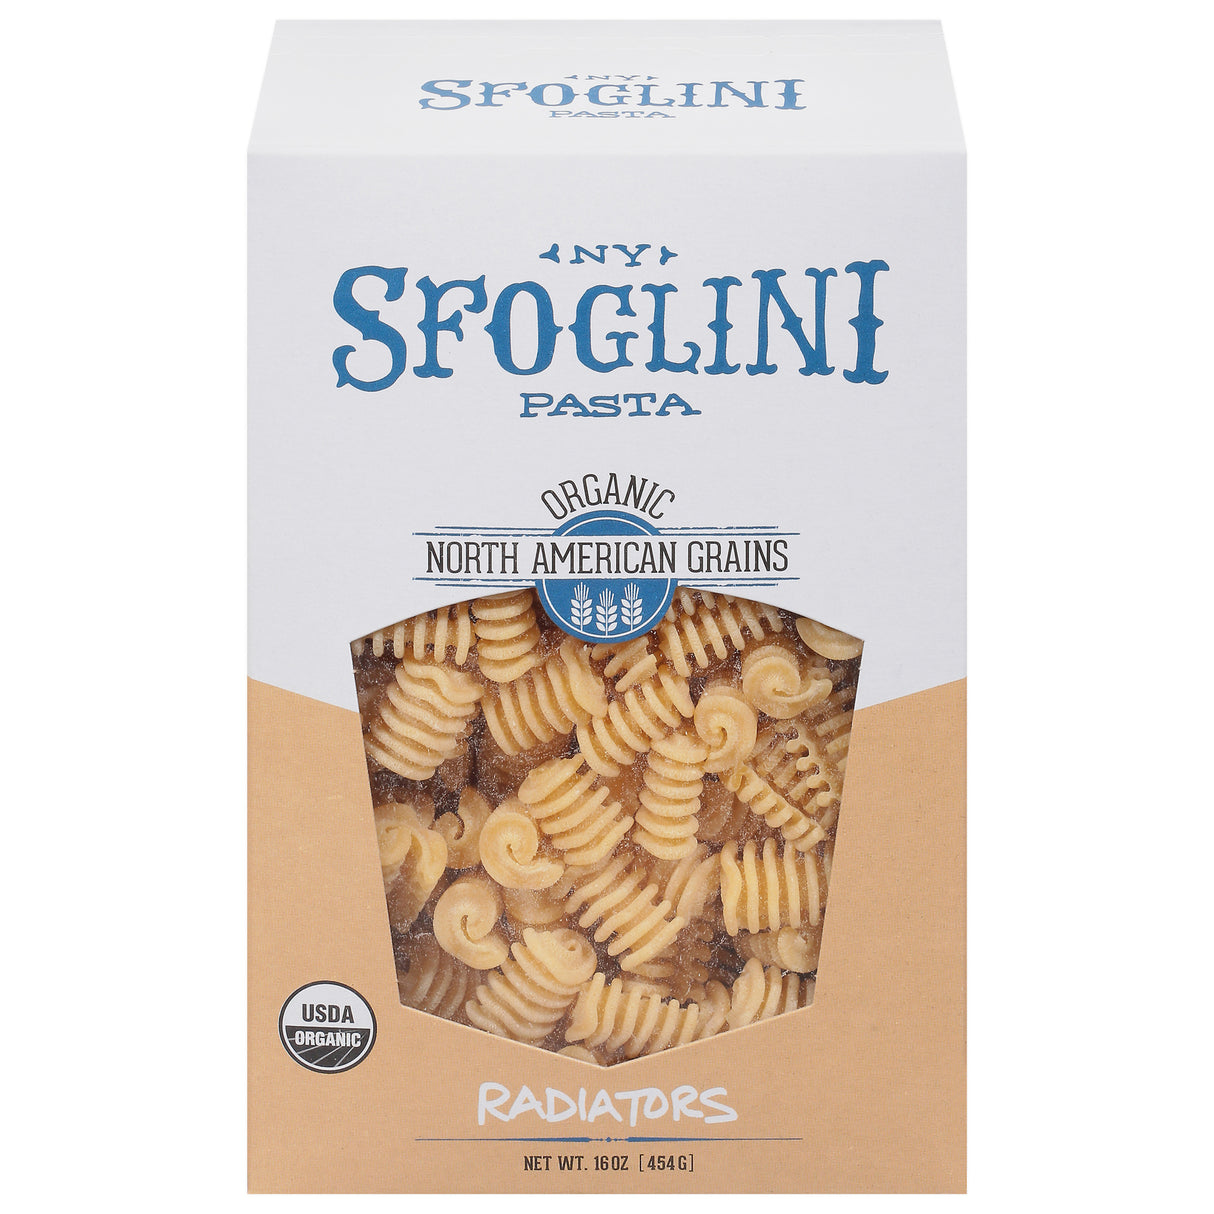 Sfoglini Durum Semolina Pasta: 6-Pack of 16 oz. Bags for Authentic Italian Cooking - Cozy Farm 